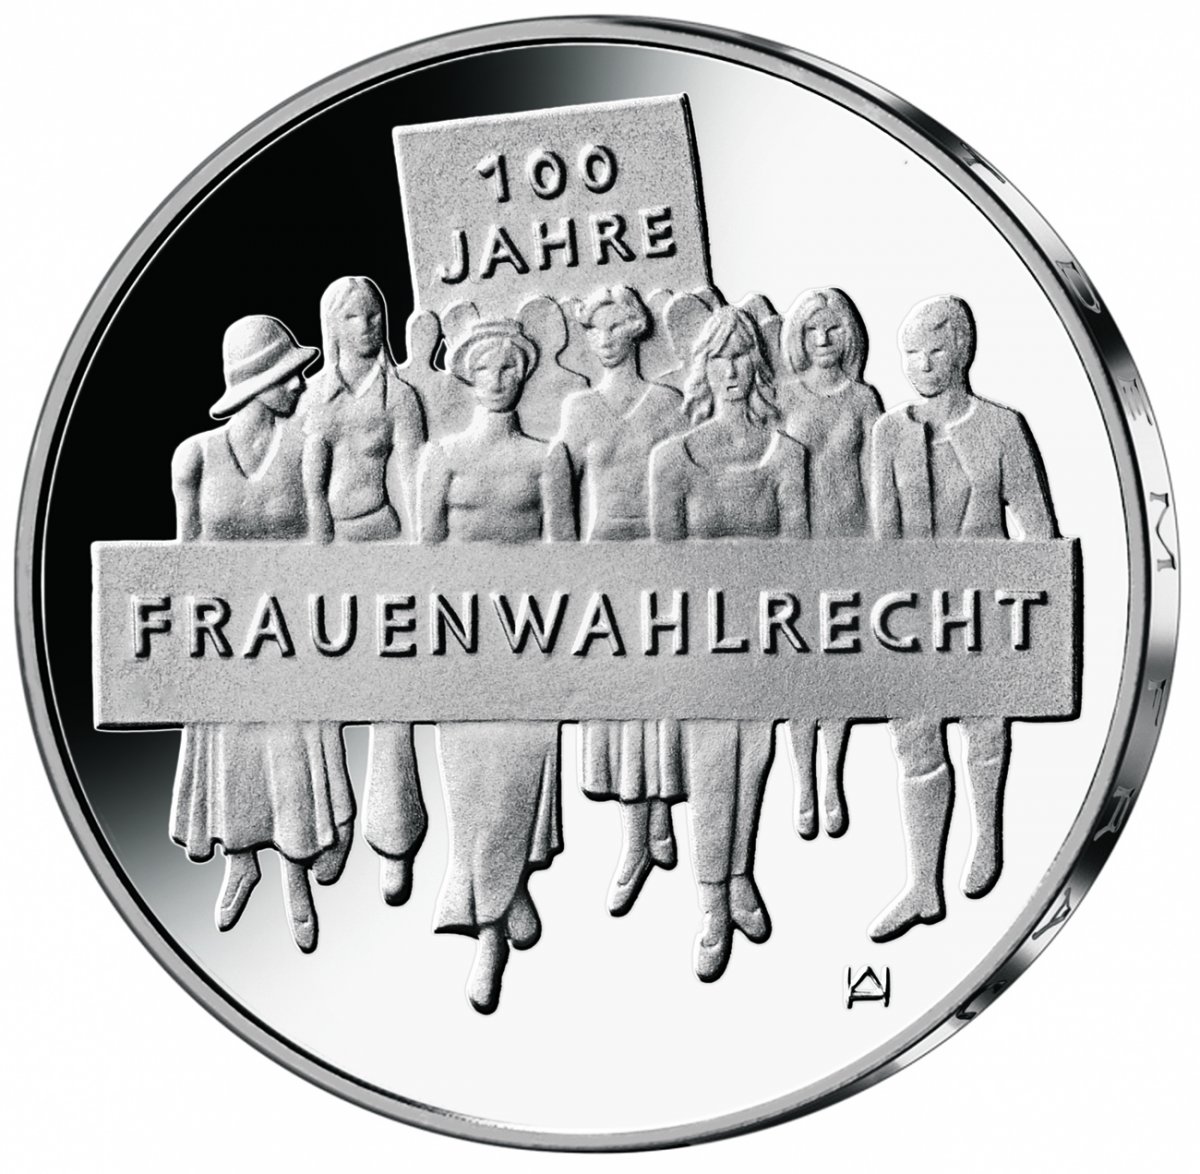 20 euro collector coin 2019 "100 Jahre Frauenwahlrecht" 